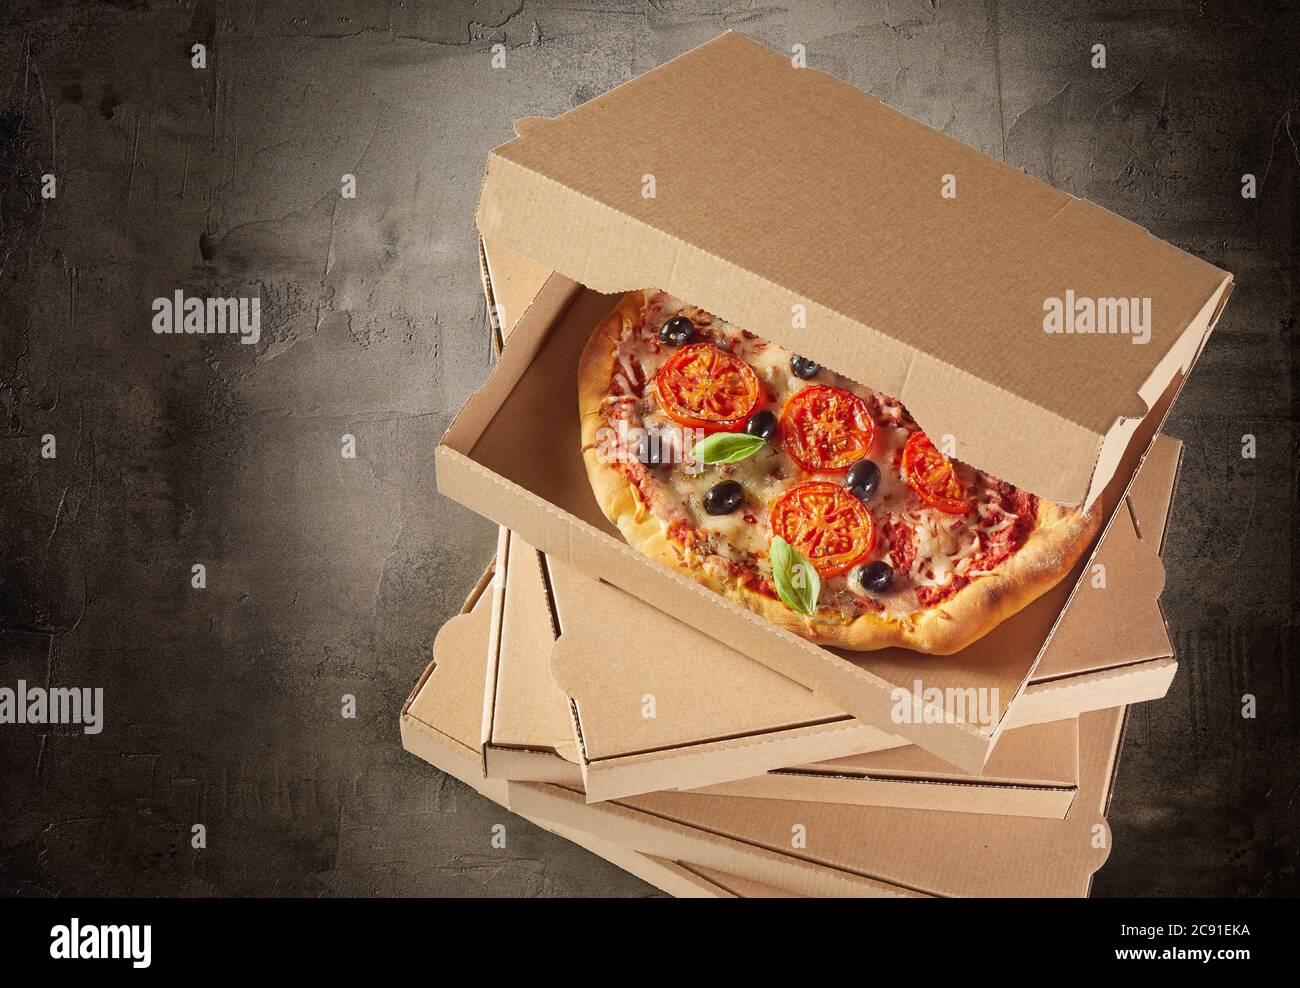 Scatole di cartone marrone generico impilate con una gustosa pizza fresca italiana all'interno della scatola aperta vista dall'alto su ardesia con vignetta Foto Stock